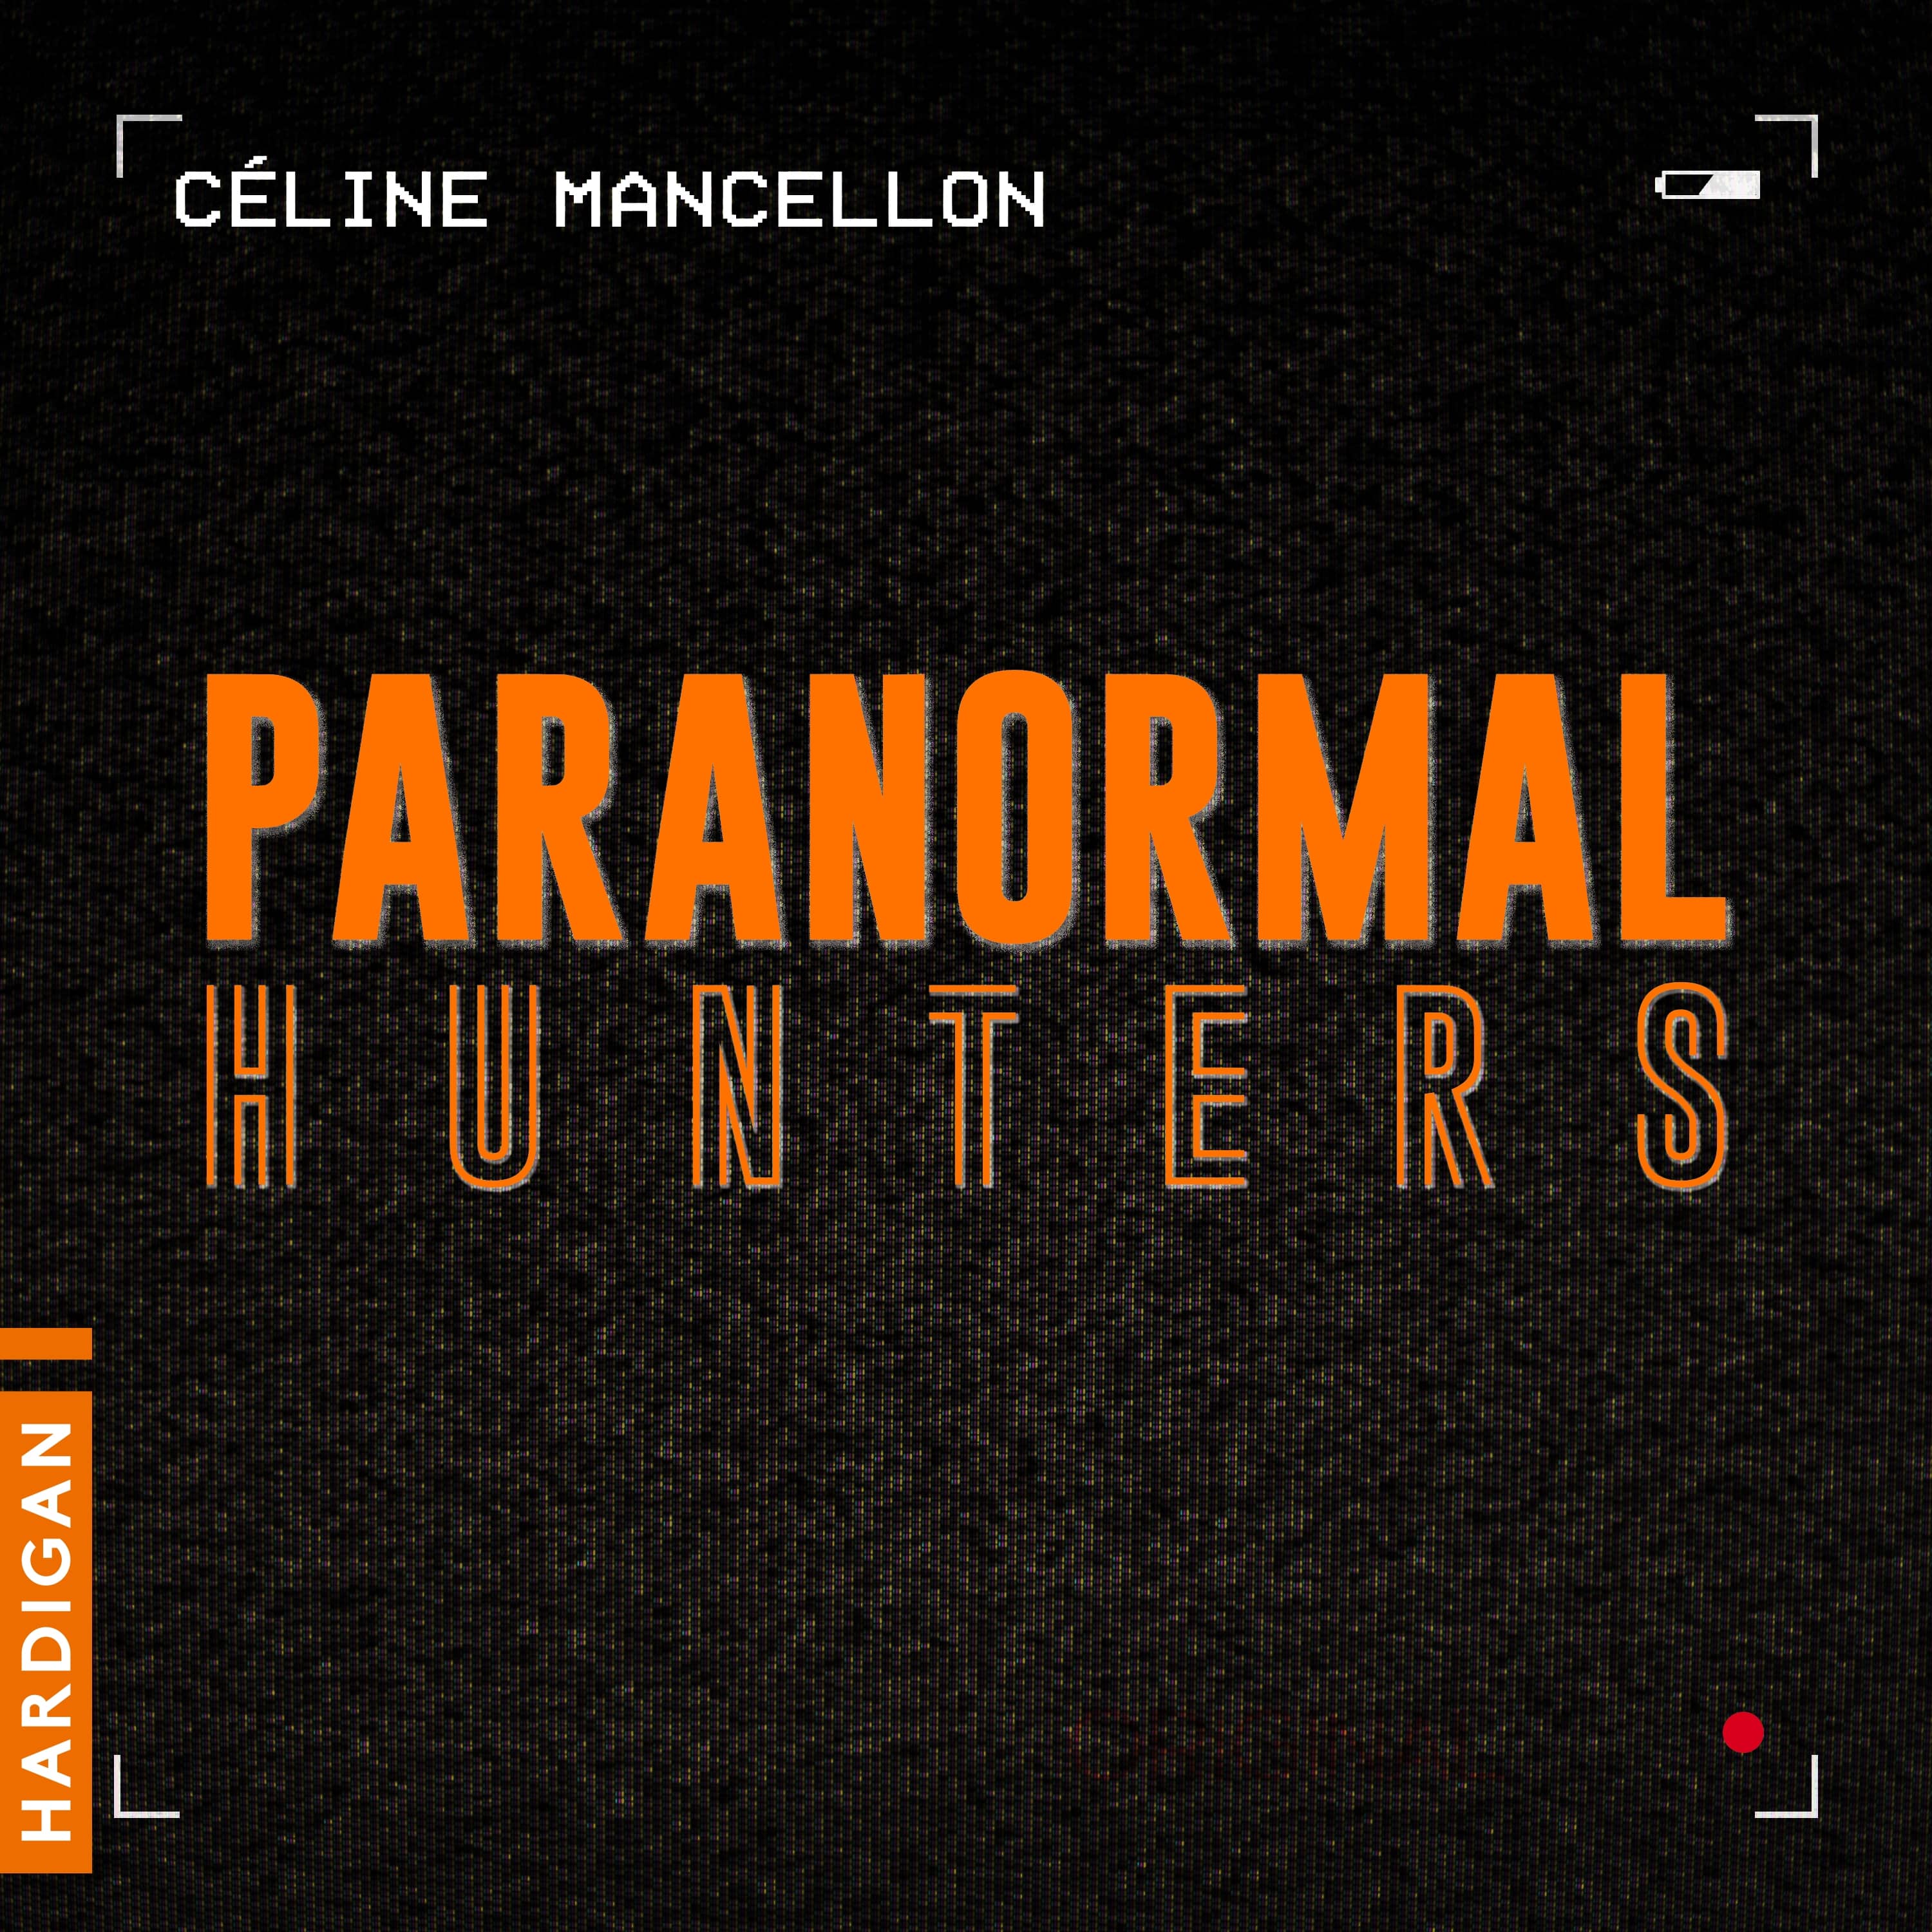 Couverture du livre audio Paranormal Hunters - L'Intégrale De Céline Mancellon 